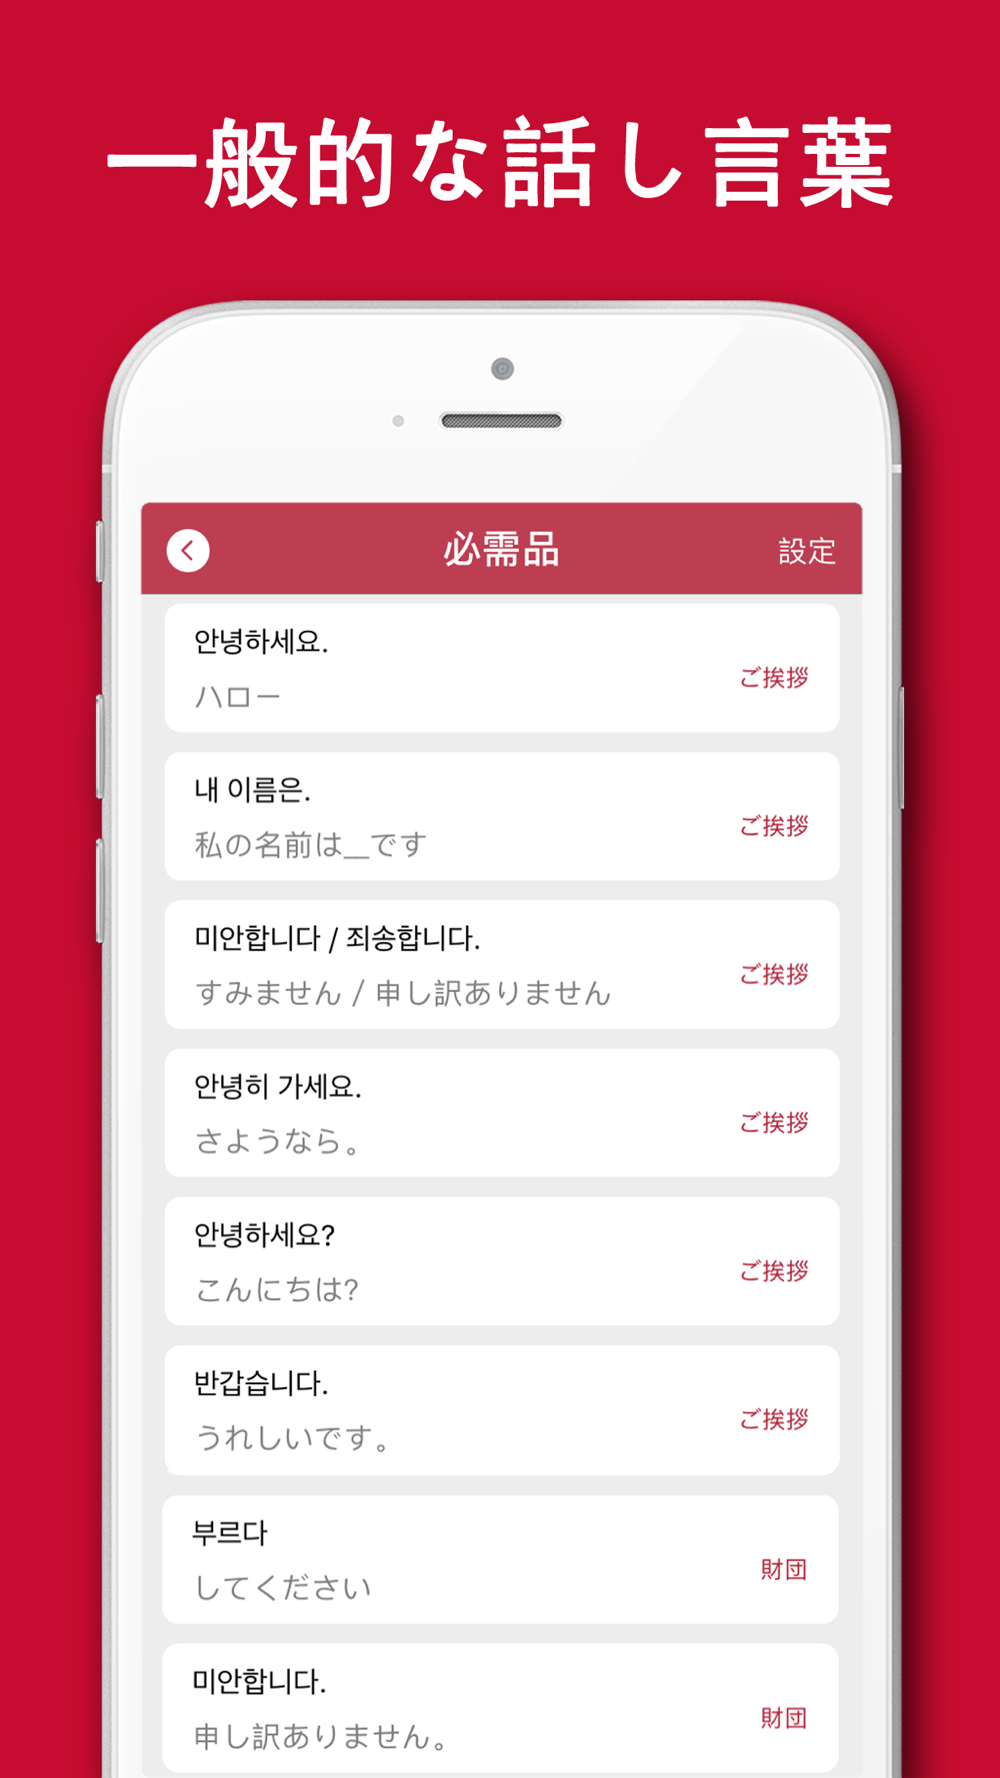 韓国語翻訳 韓国語写真音声翻訳アプリ Free Download App For Iphone Steprimo Com